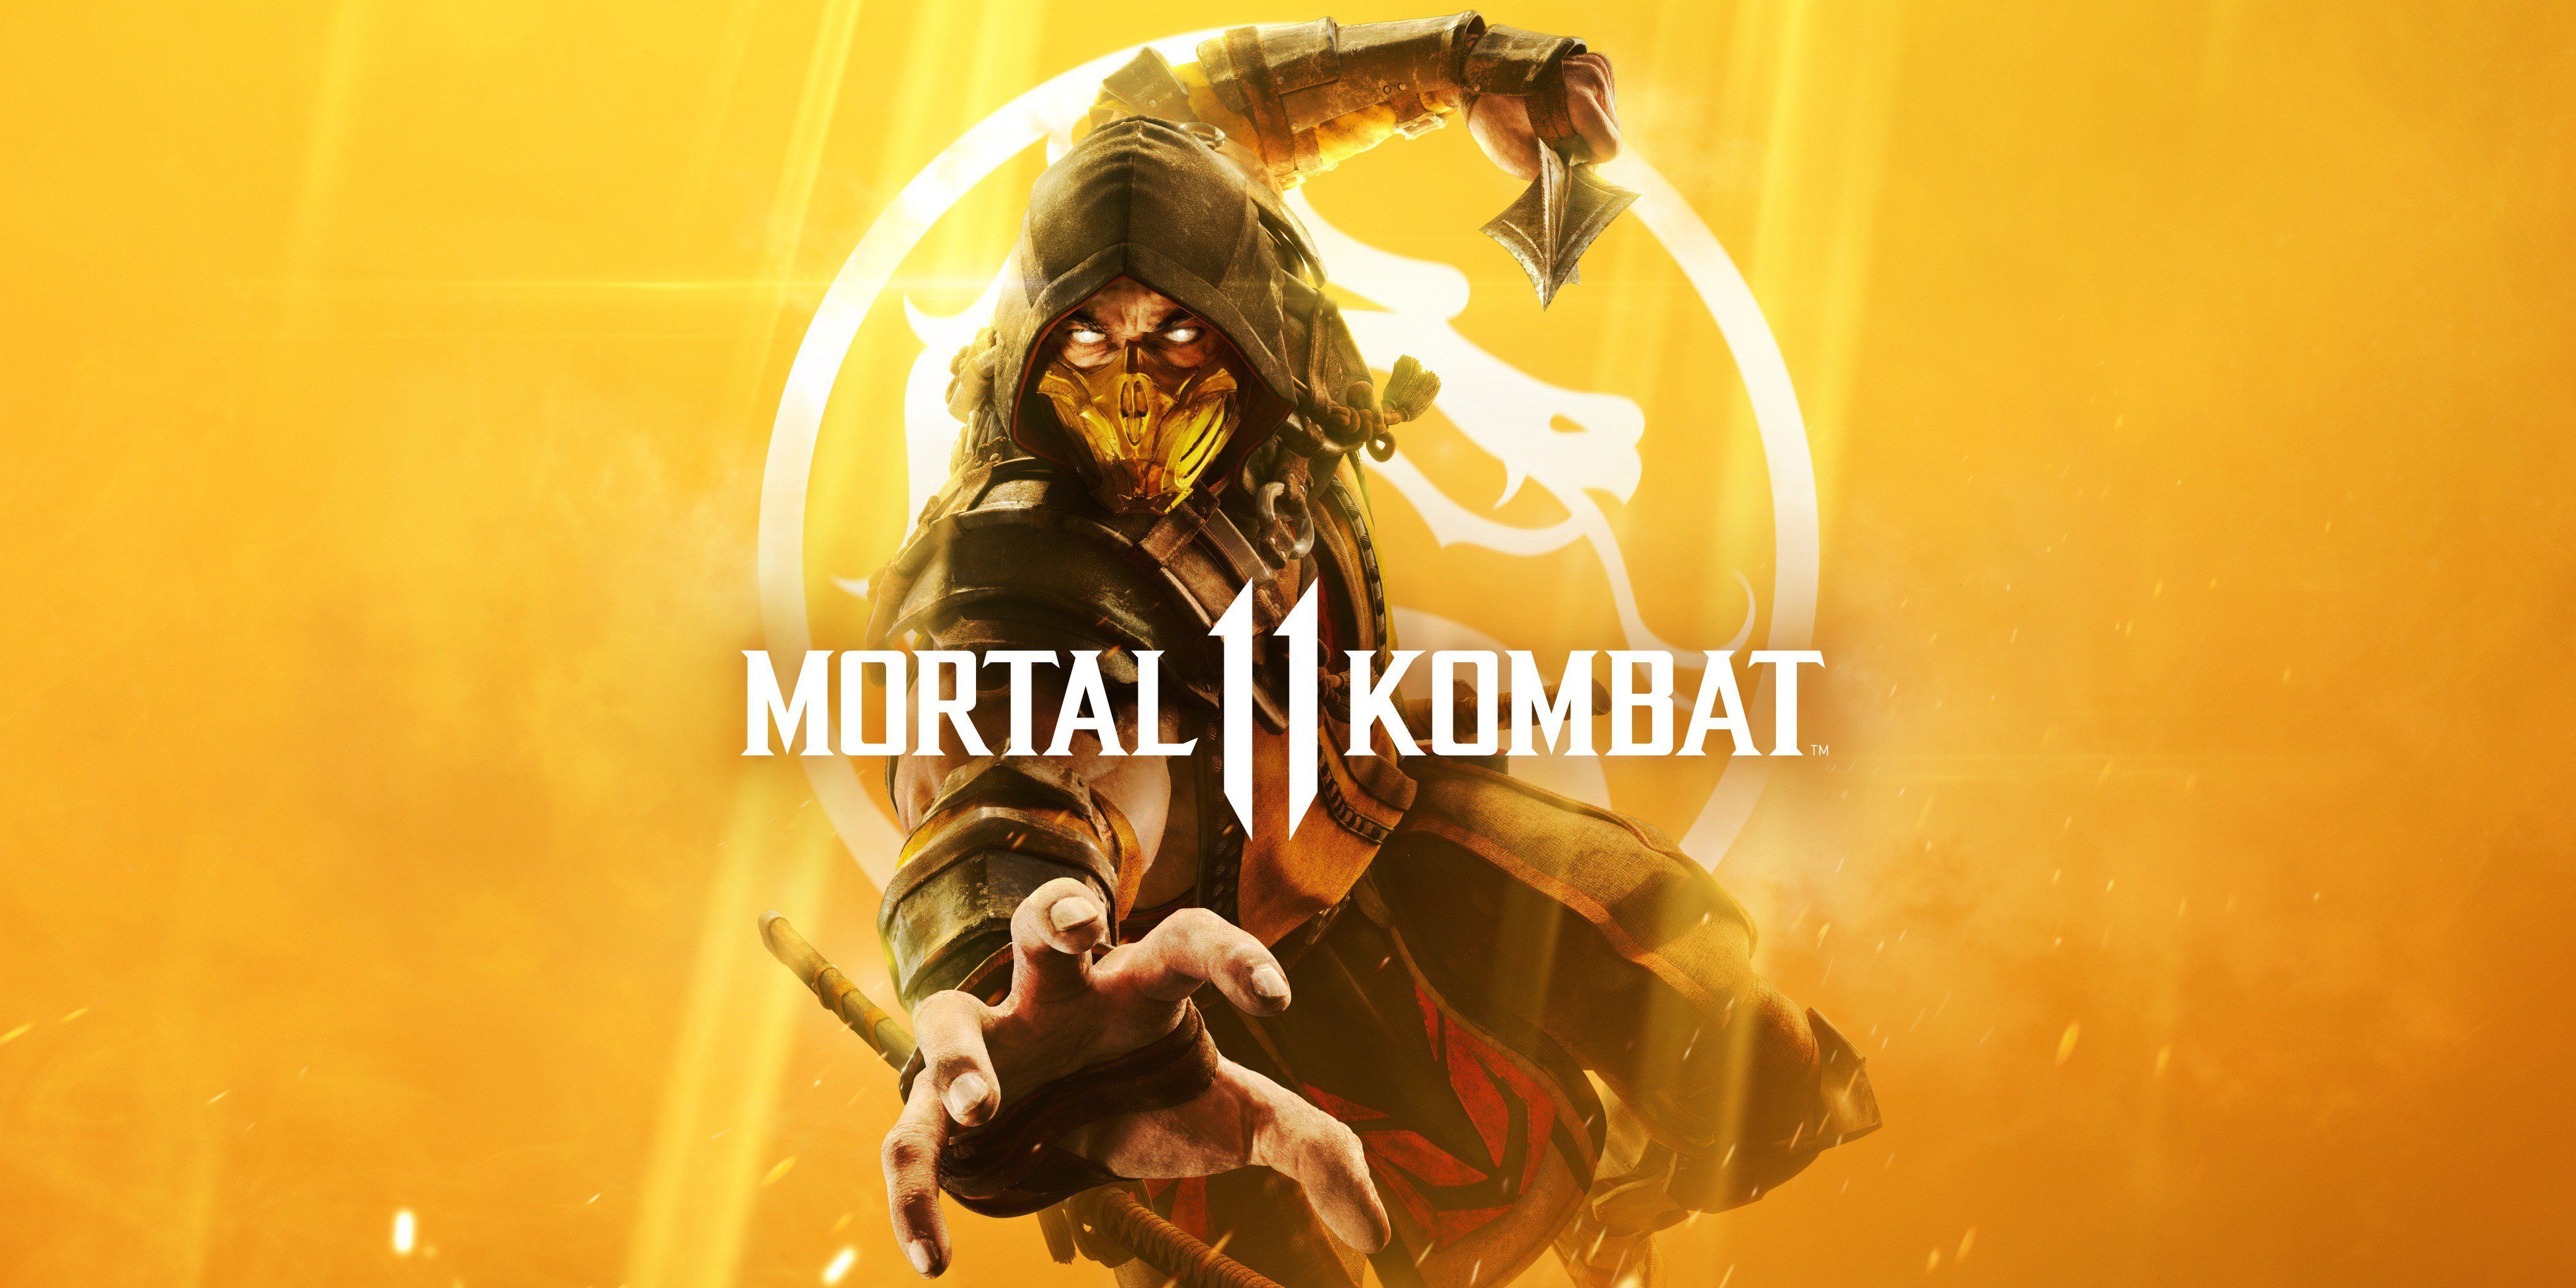 Mortal Kombat 11 Wallpaper 4k iPhone, Android and Desktop